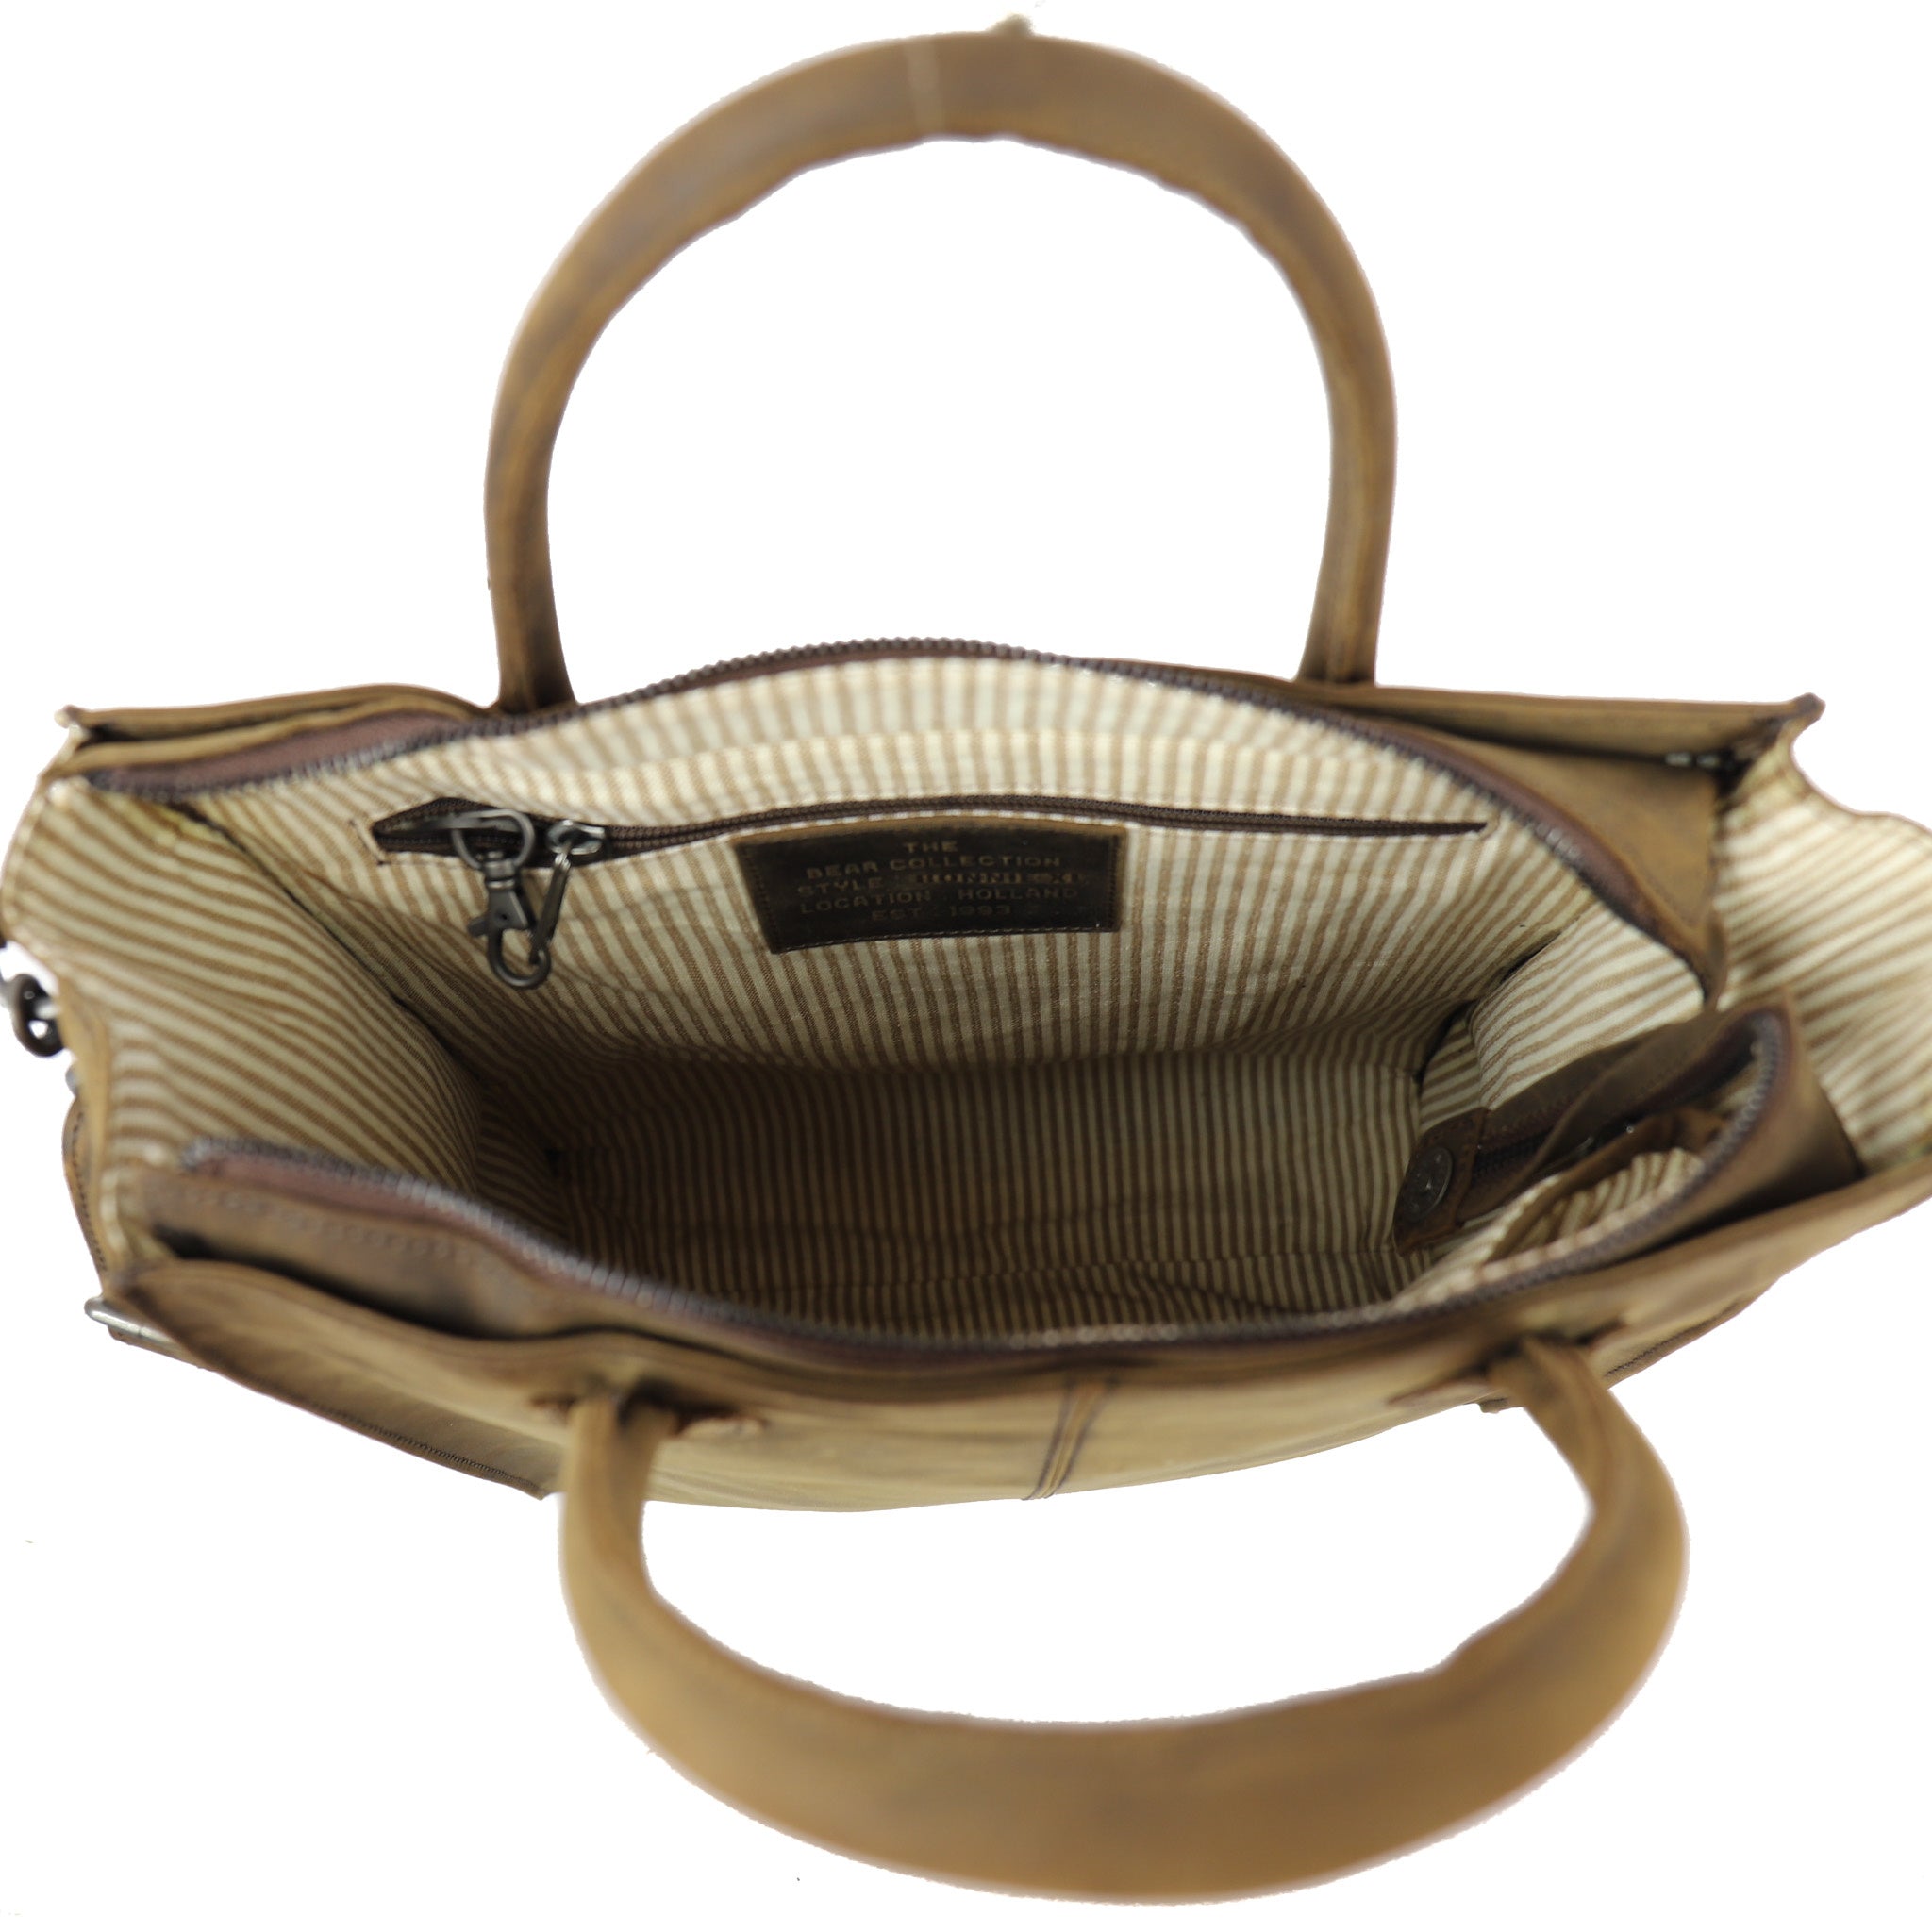 Hand/shoulder bag 'Bonnie XL' brown - CP 2208 HD